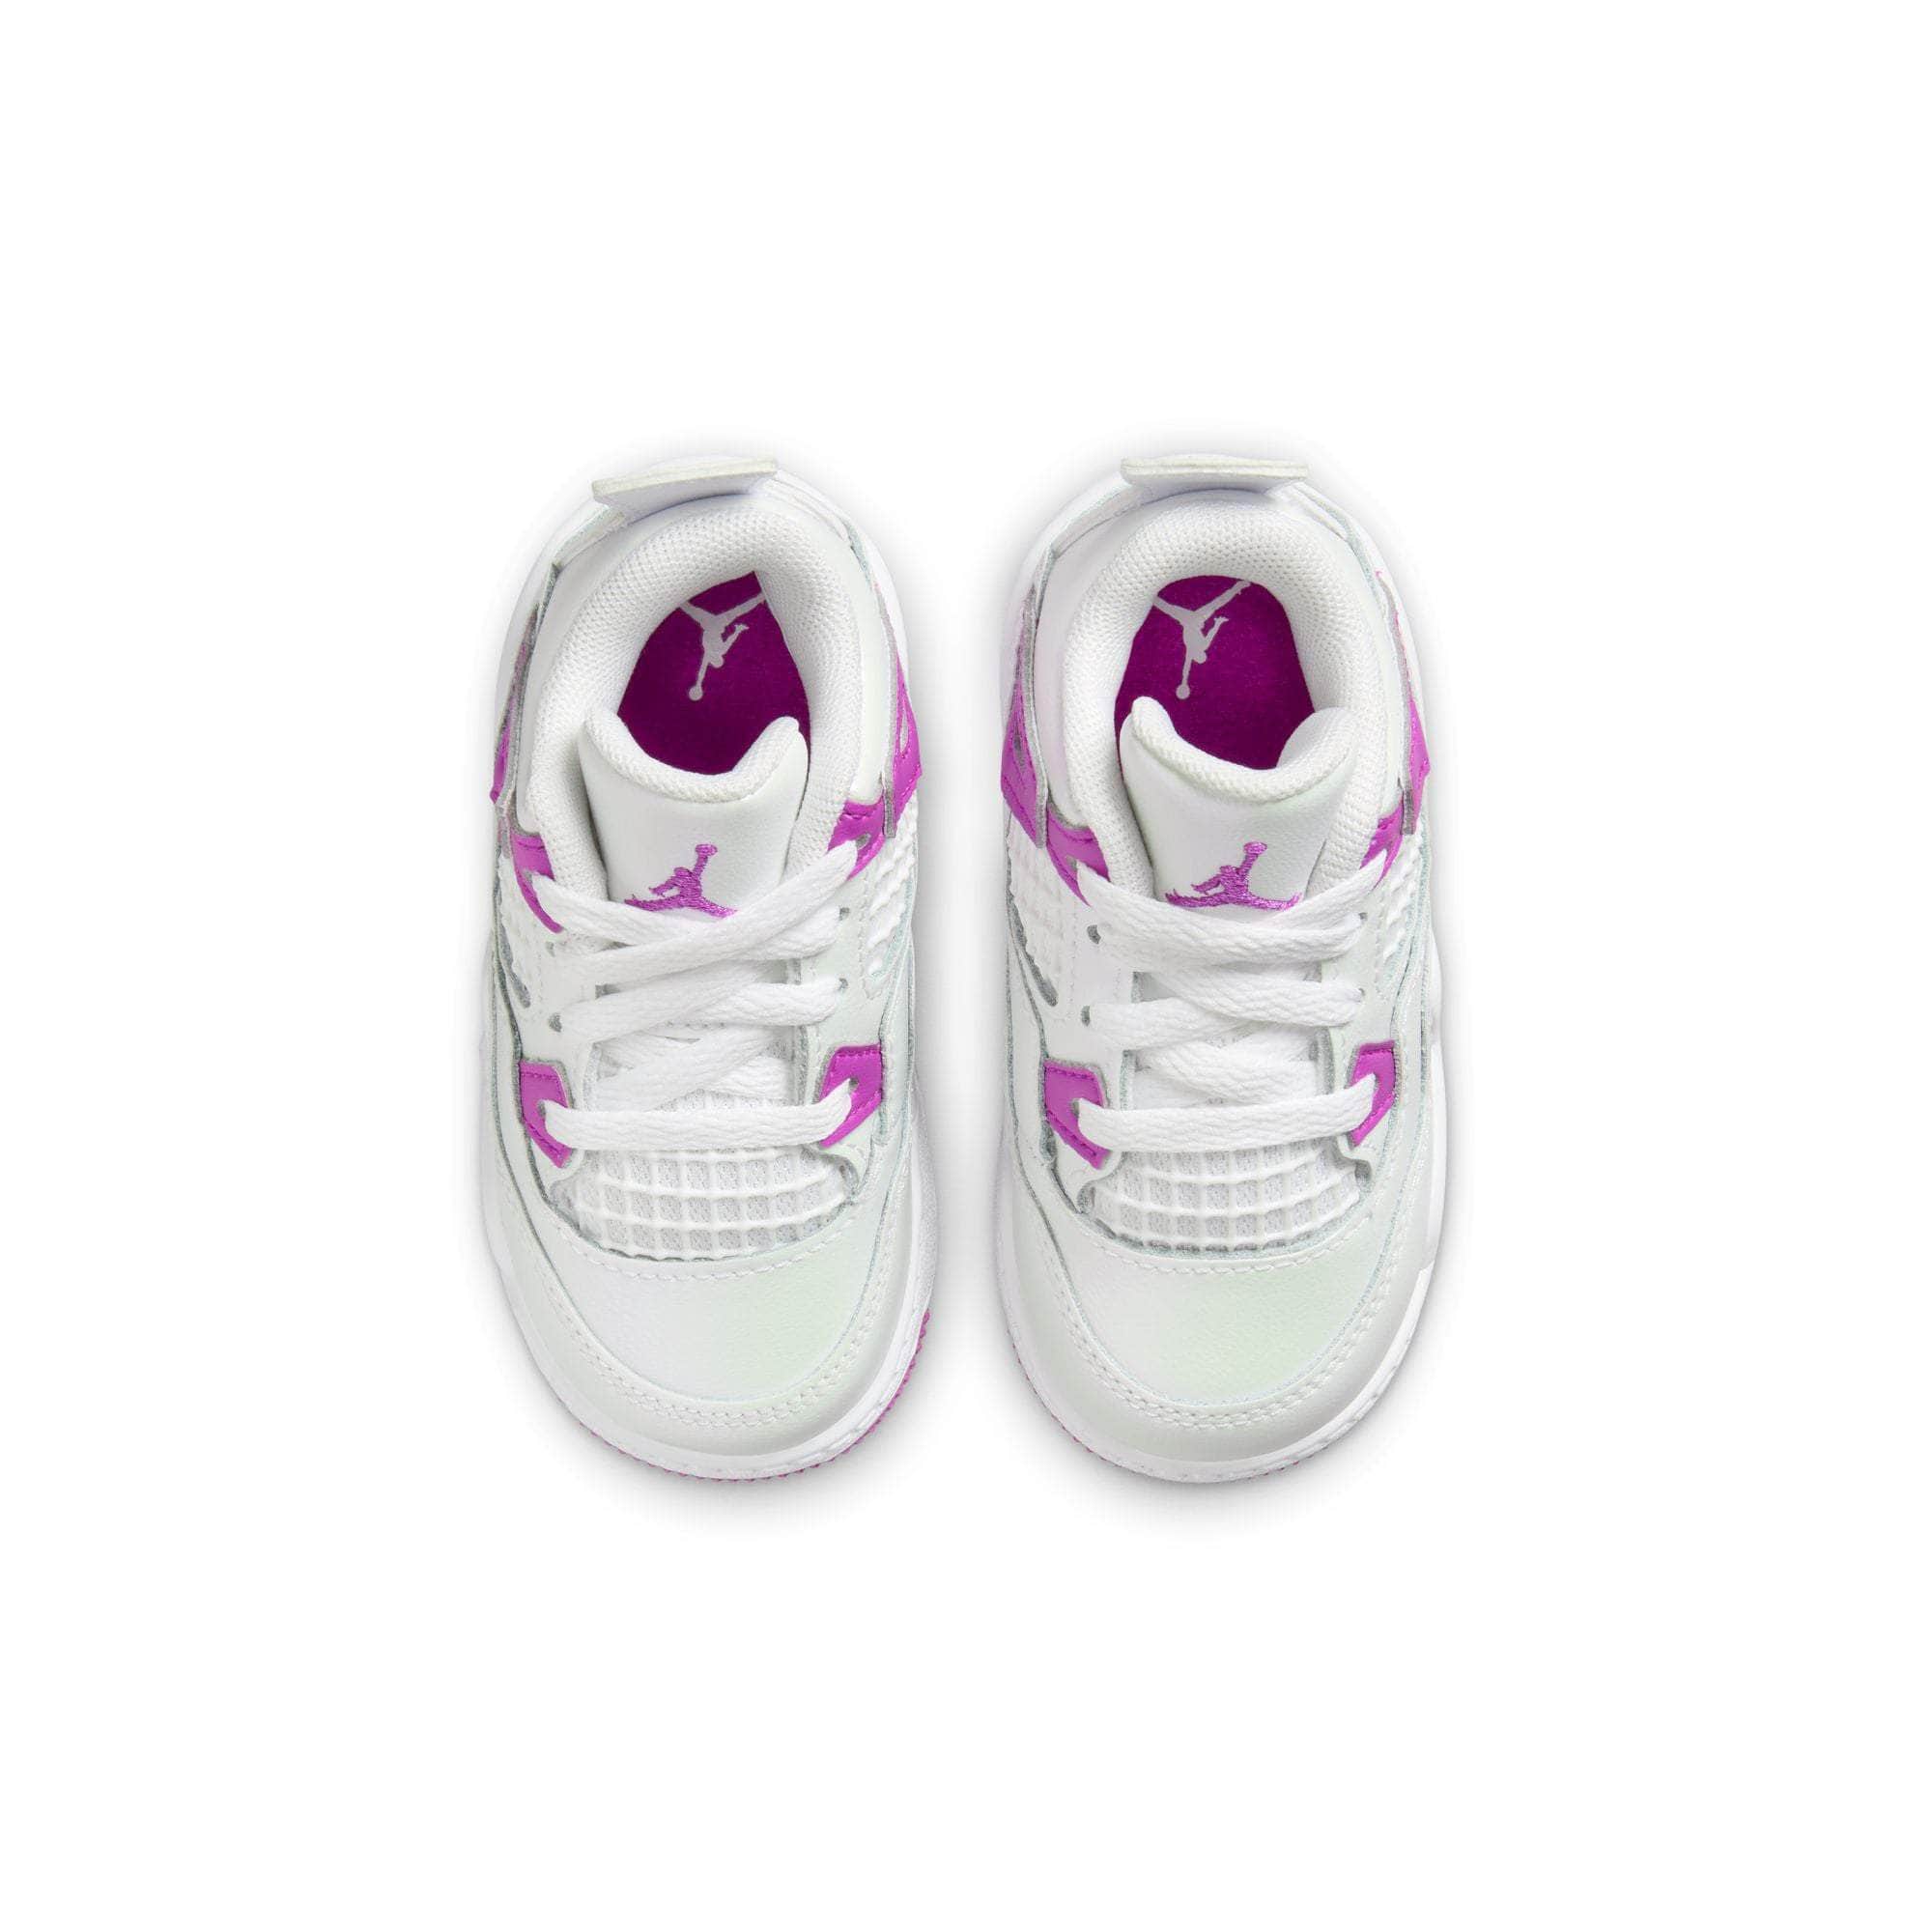 Air Jordan Footwear Air Jordan 4 "Hyper Violet" - Toddler's TD